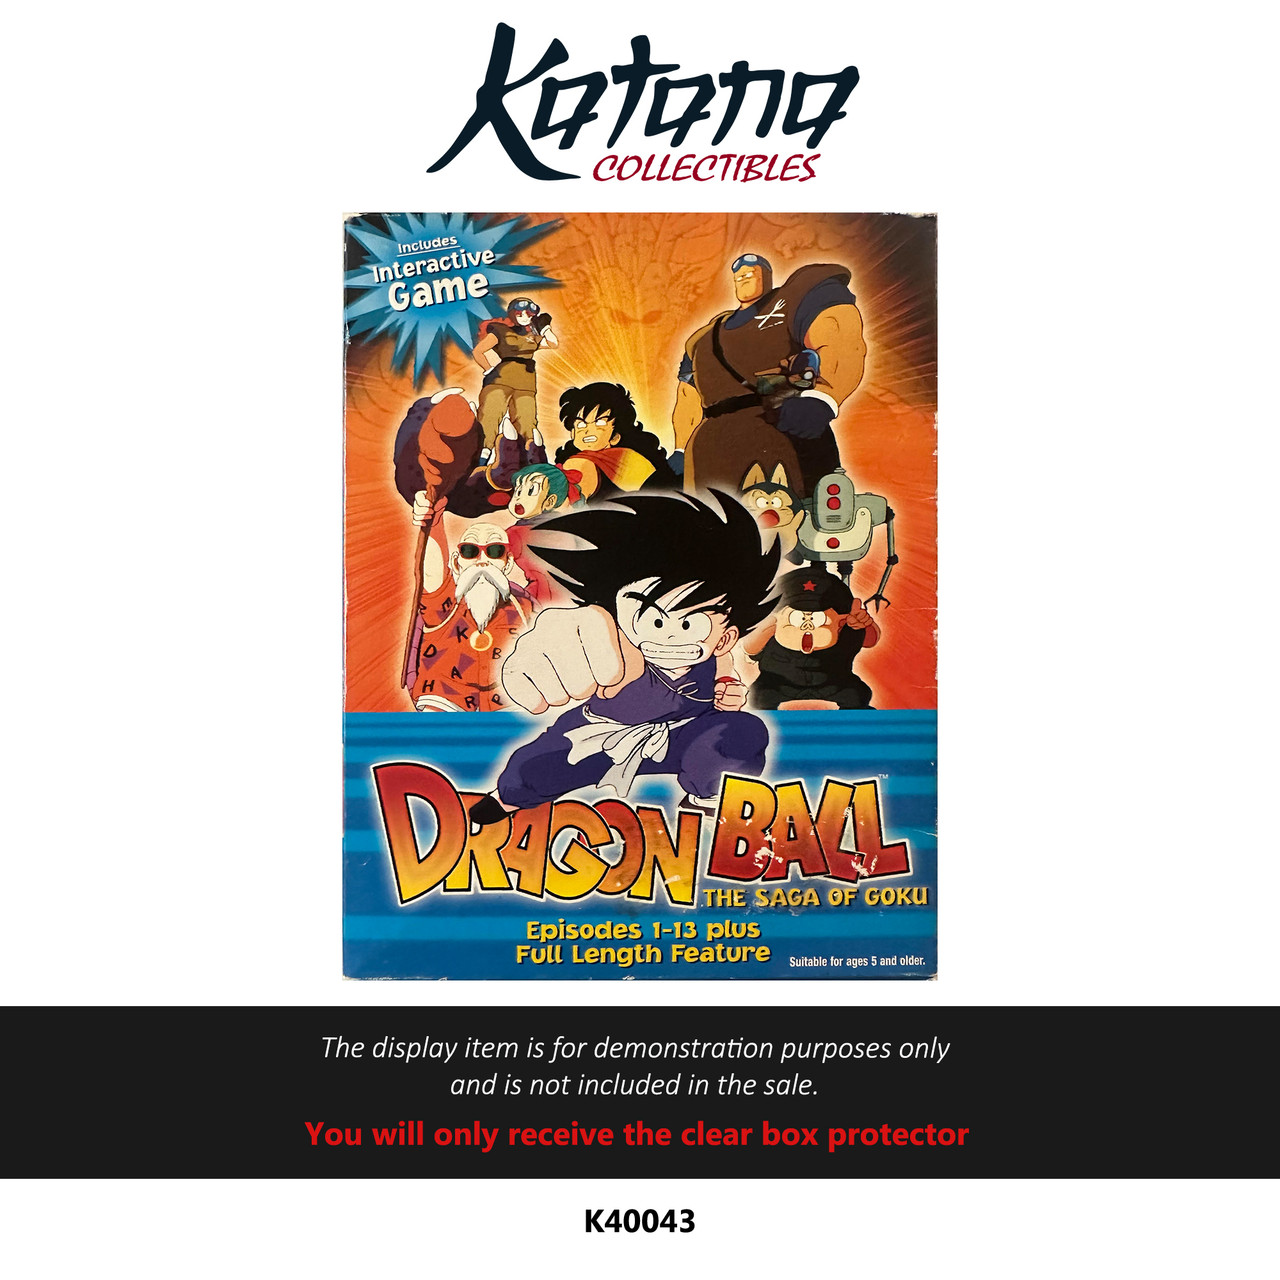 Katana Collectibles Protector For Dragon Ball The Saga of Goku DVD Box Set